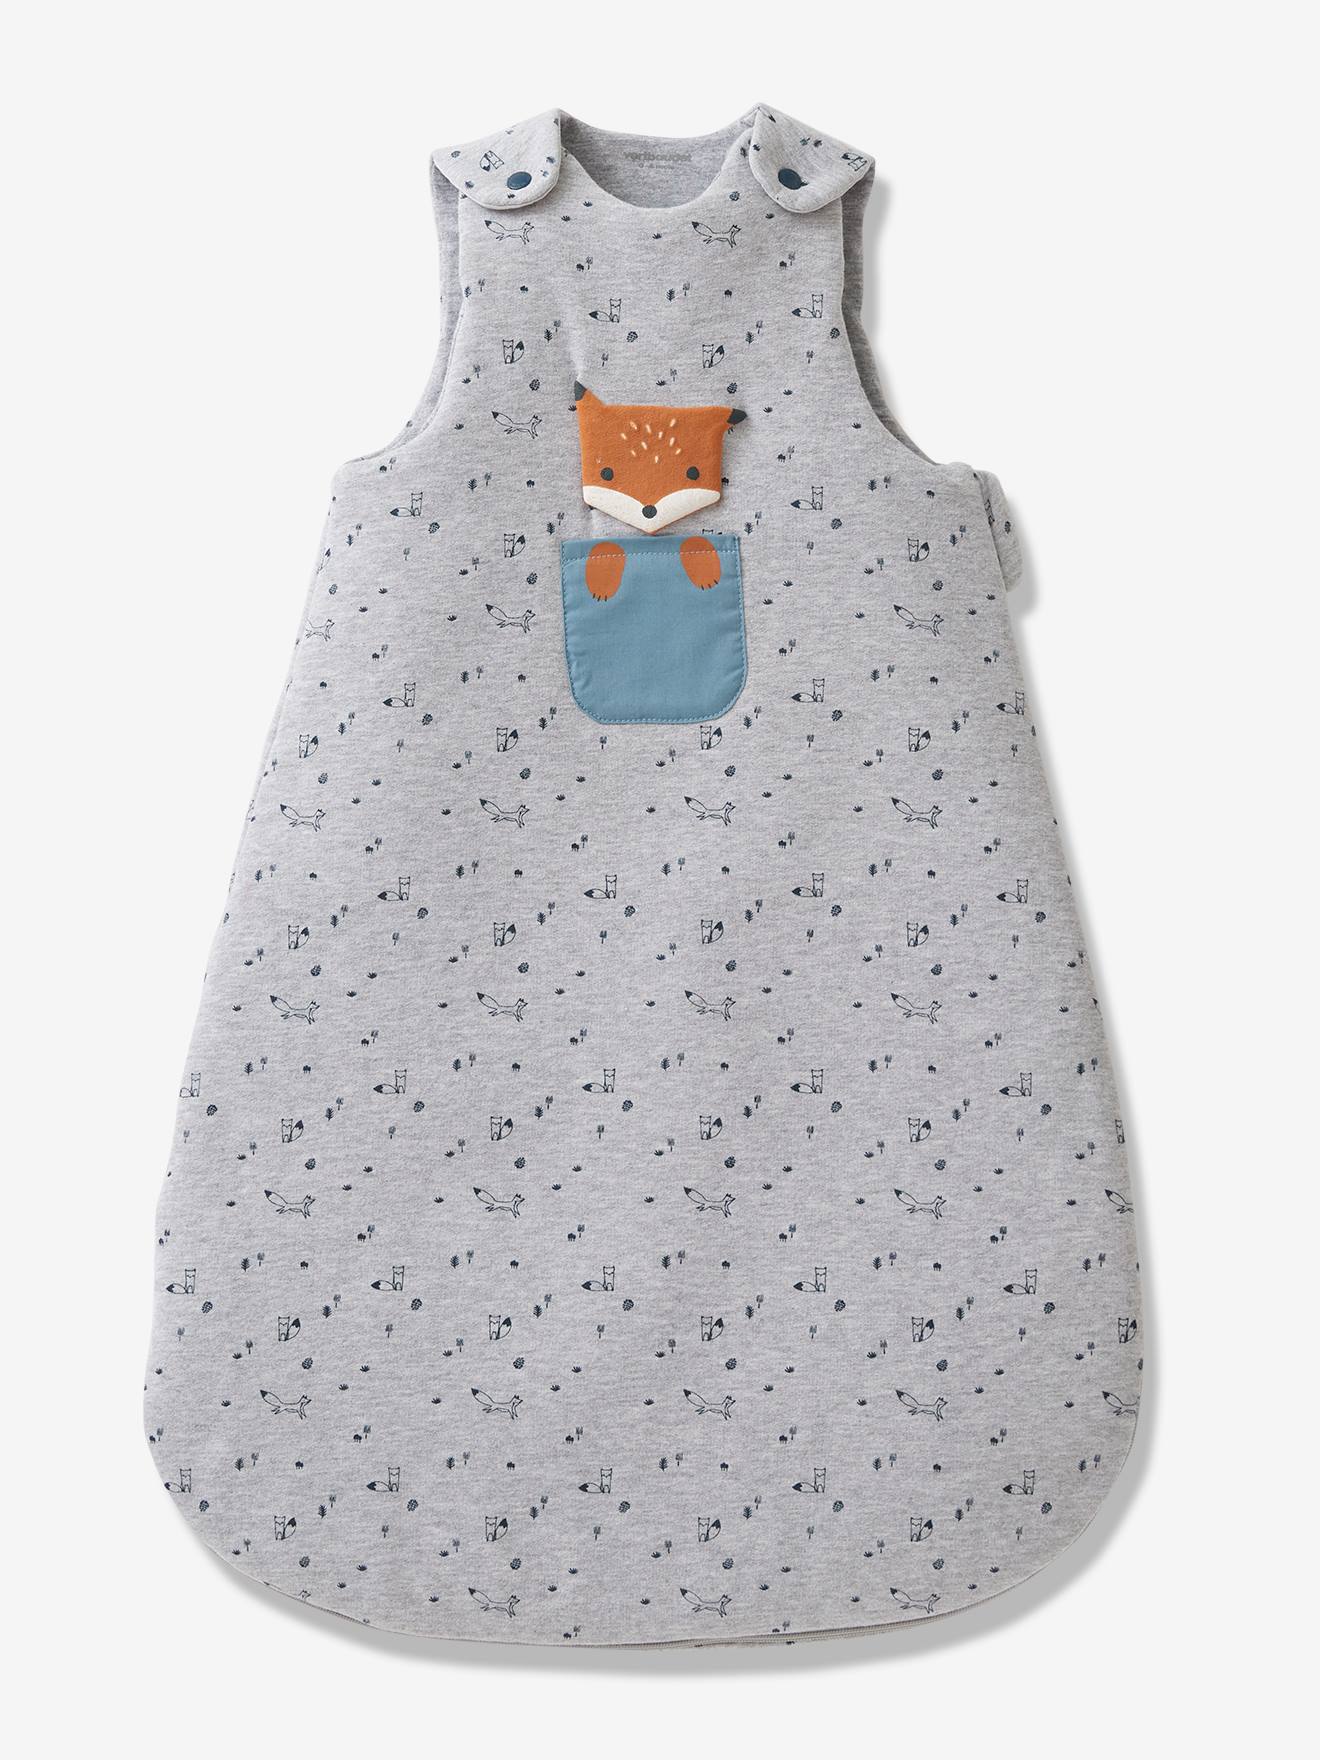 baby sleep sack,baby girl,baby,baby blanket,baby bedding,sleep sack,size 3-6 month,fox